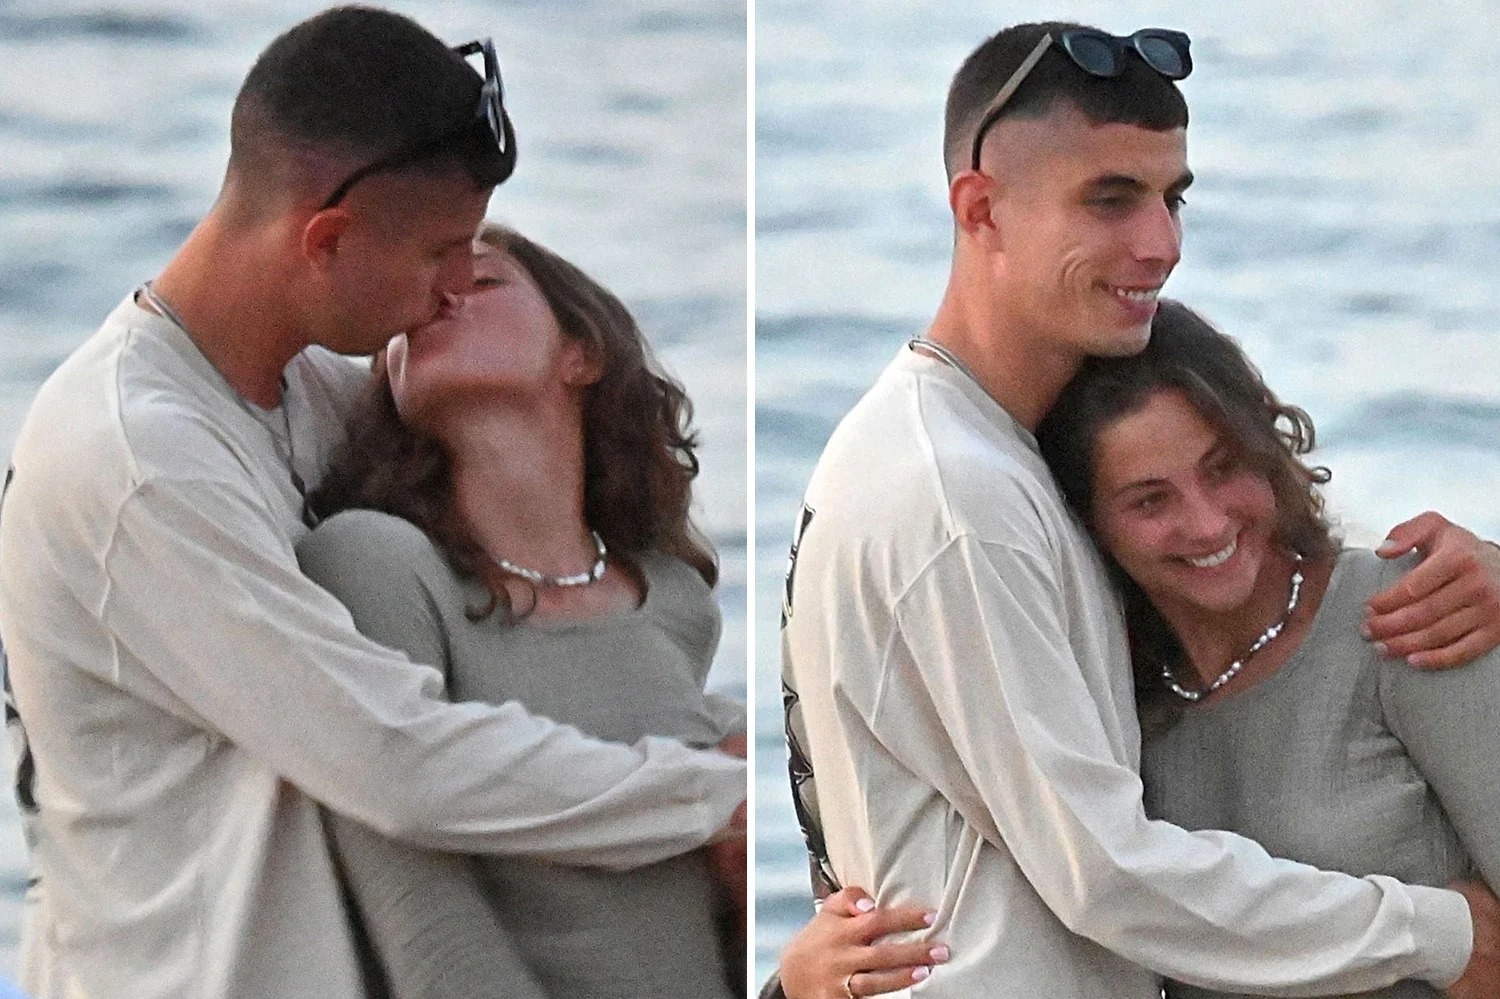 Lovedup Chelsea star Kai Havertz kisses girlfriend Sophia on beach